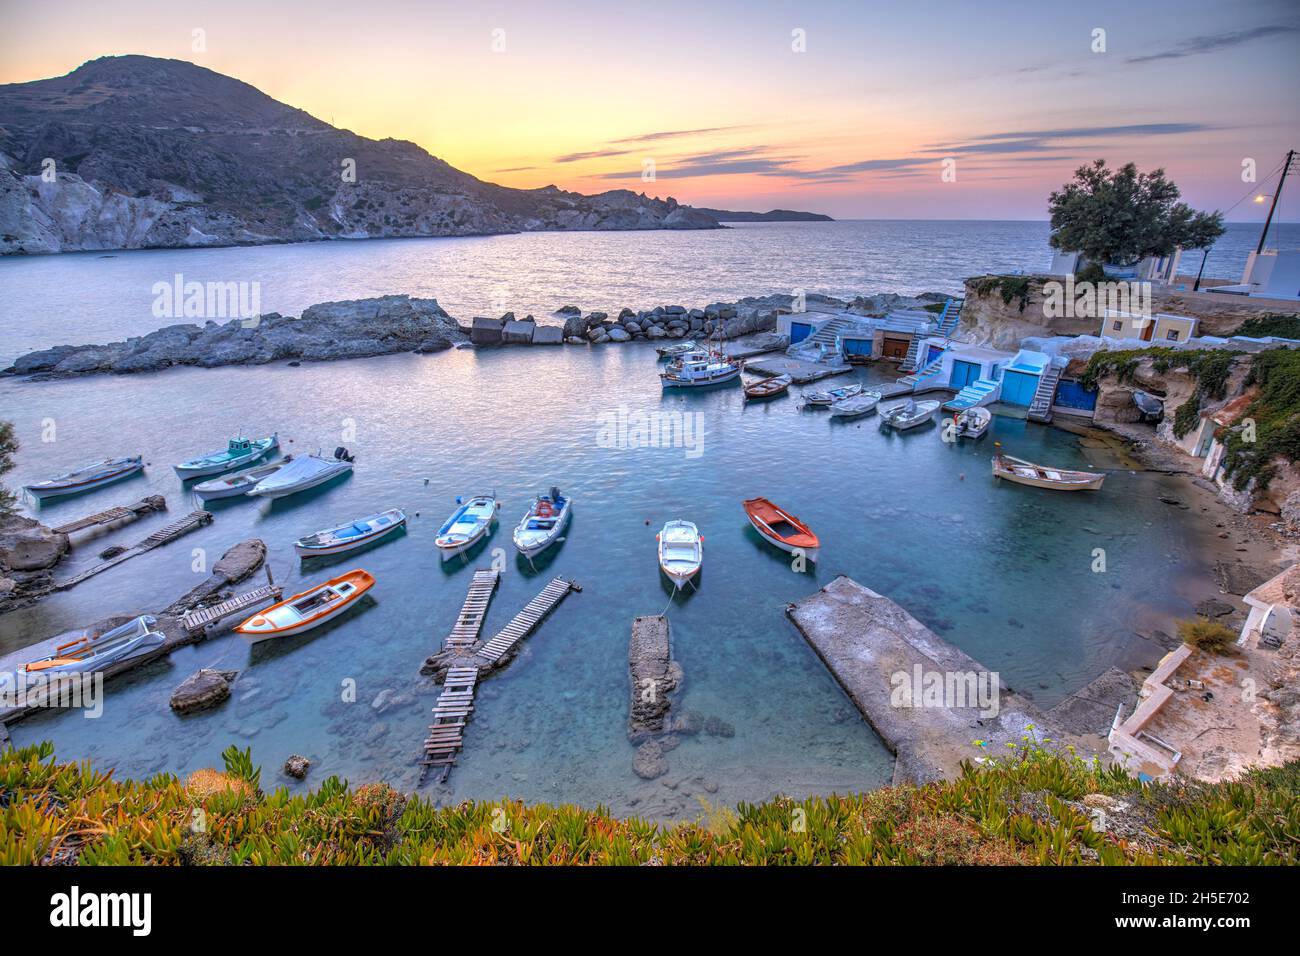 El pintoresco pueblo pesquero de Mandrakia al atardecer, Milos, Grecia Foto de stock